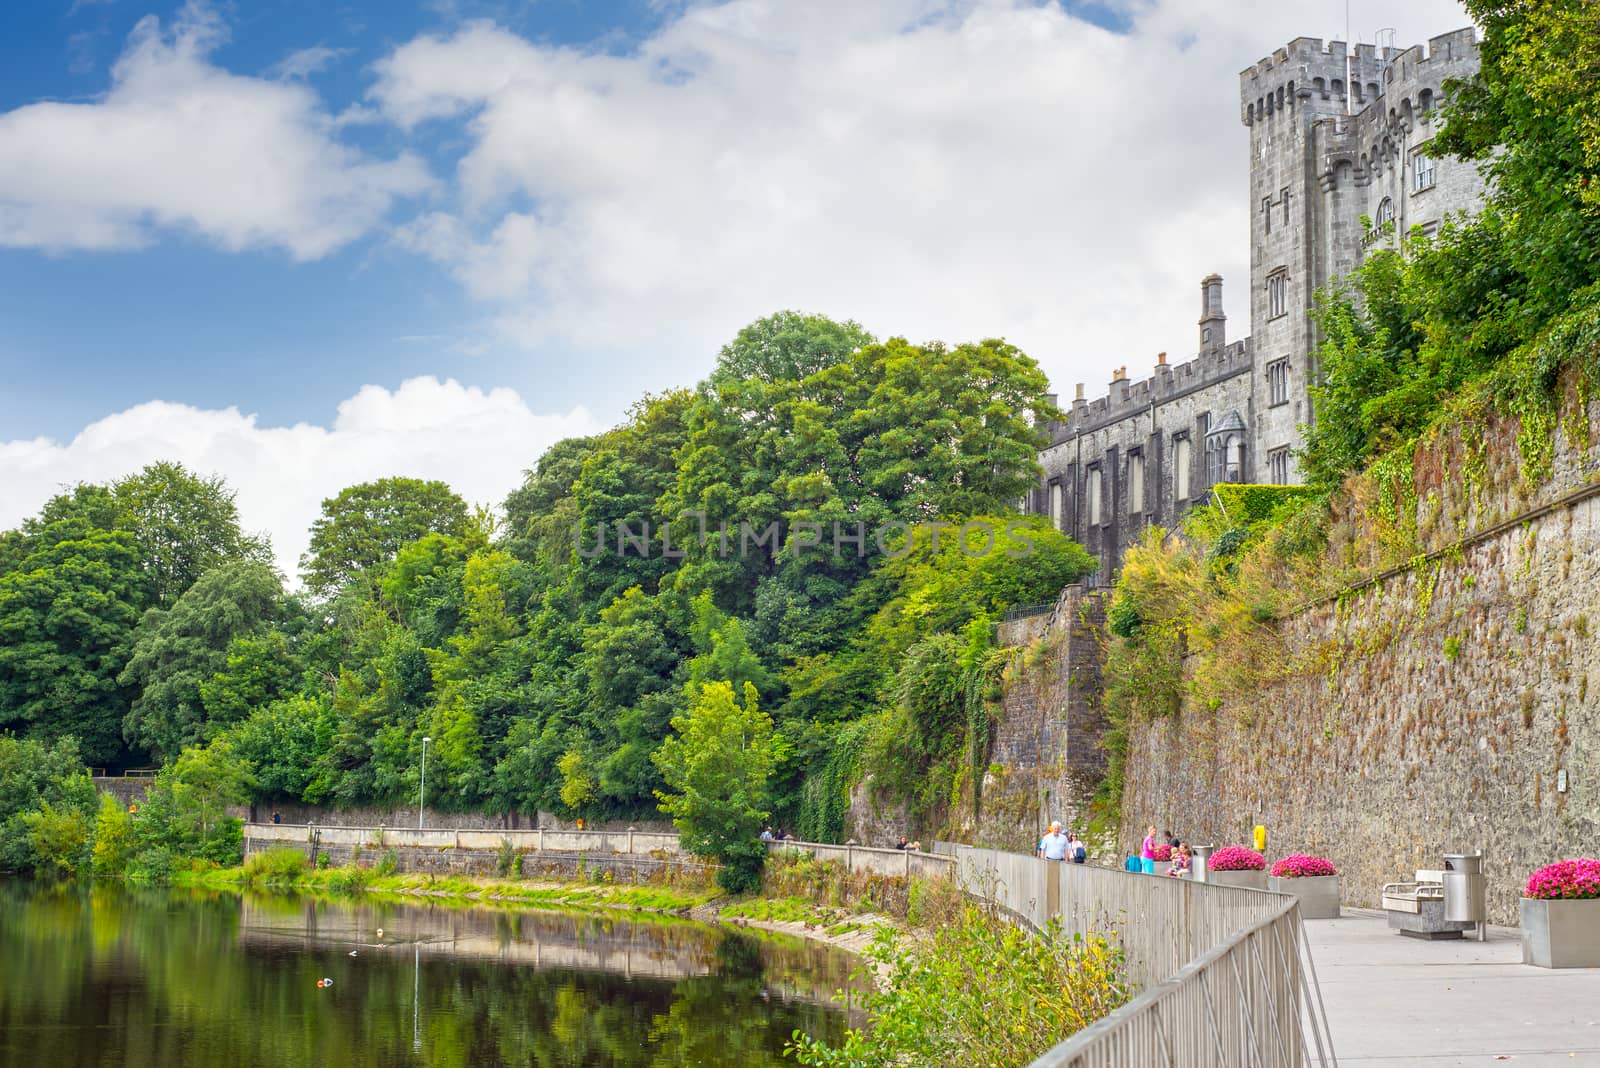 riverside walk next to the kilkenny castle in ireland